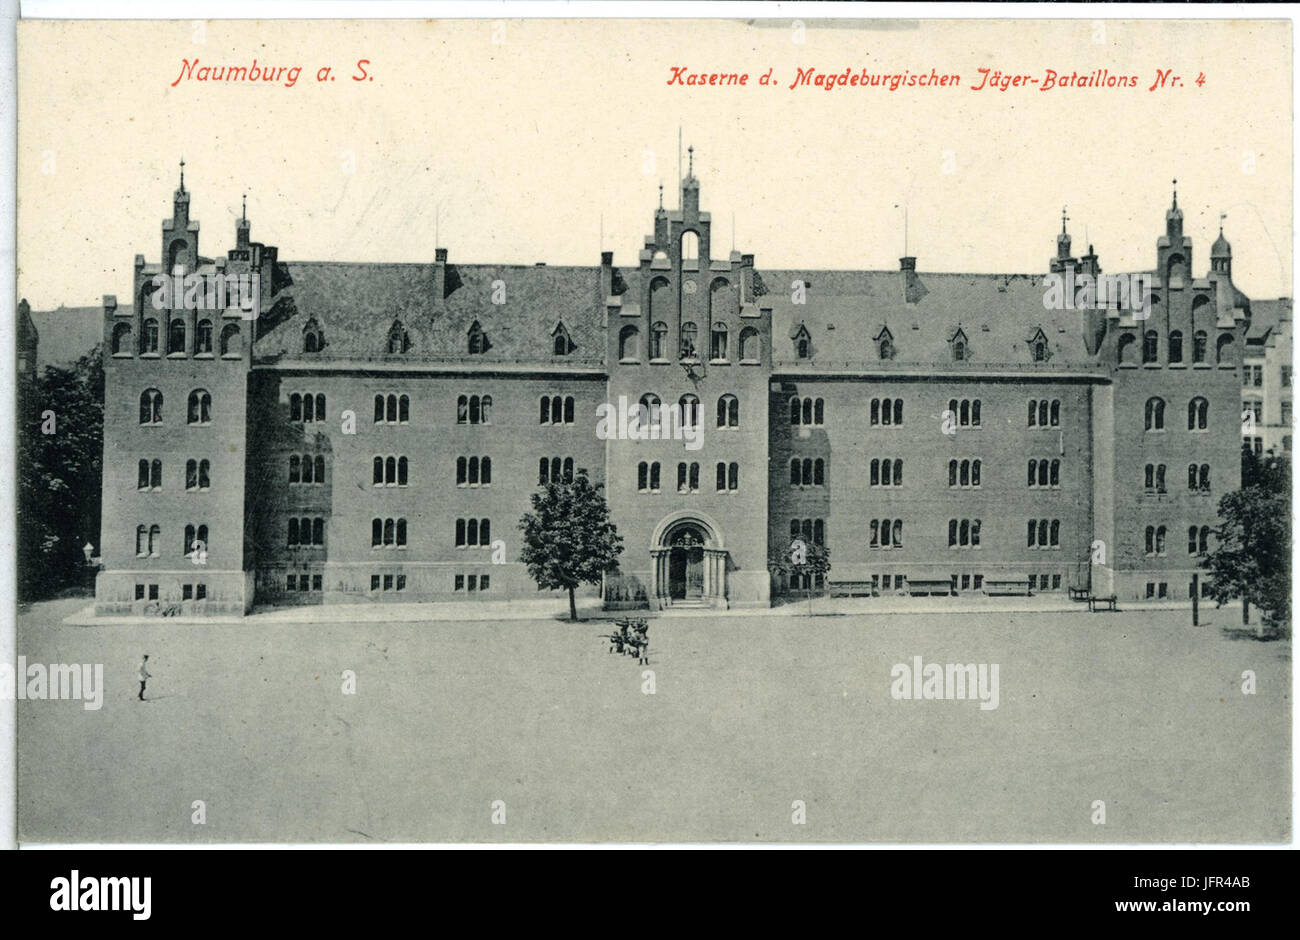 13955-Naumburg-1912-Kaserne Magdeburger Jäger-Bataillon Nr. 4-Brück & Sohn Kunstverlag Stock Photo